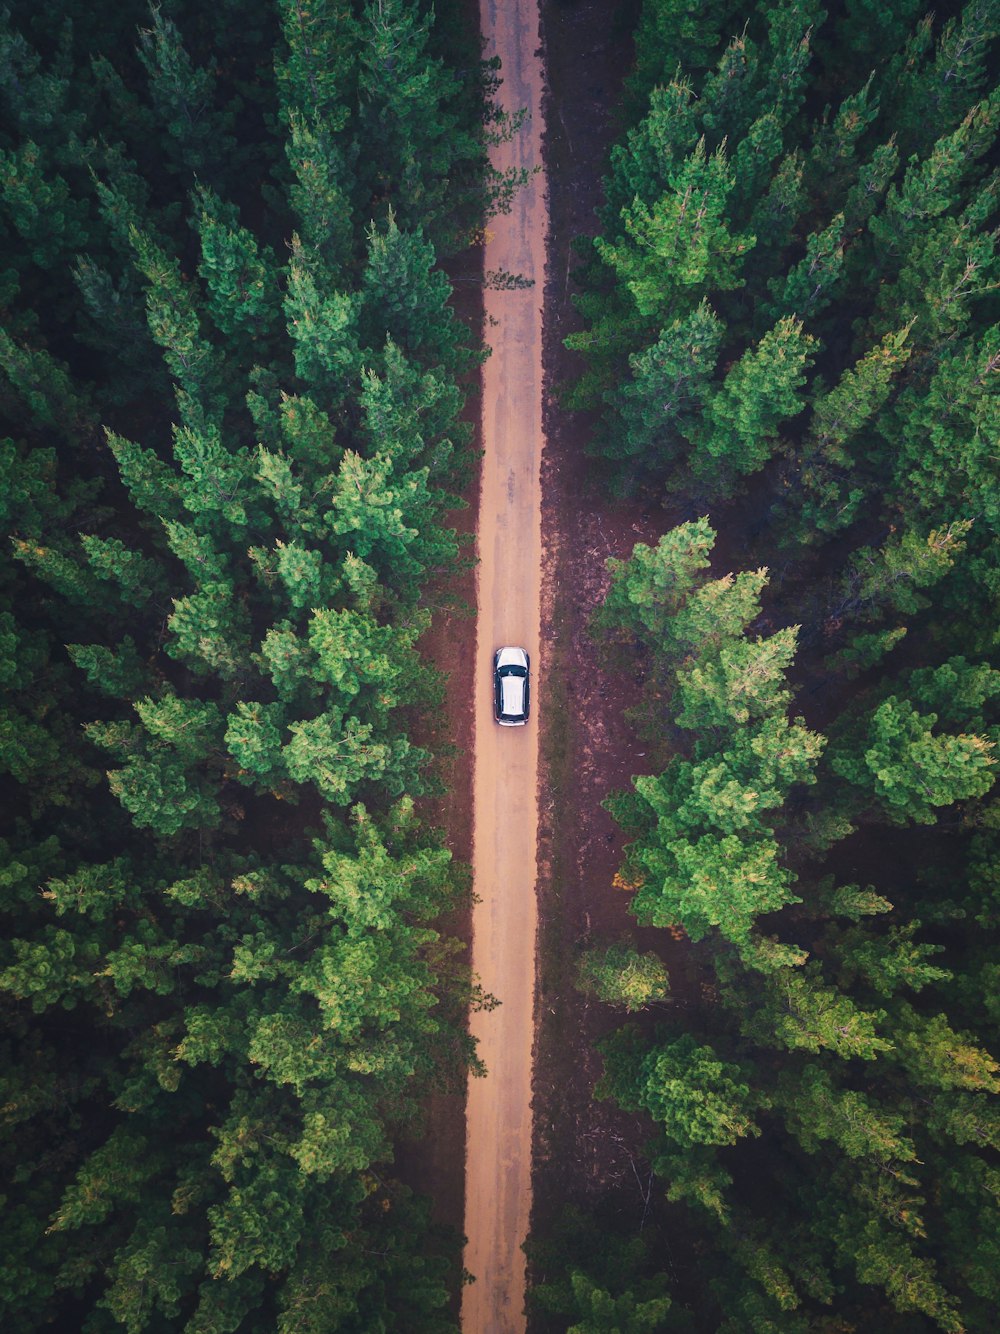 veículo na estrada entre árvores